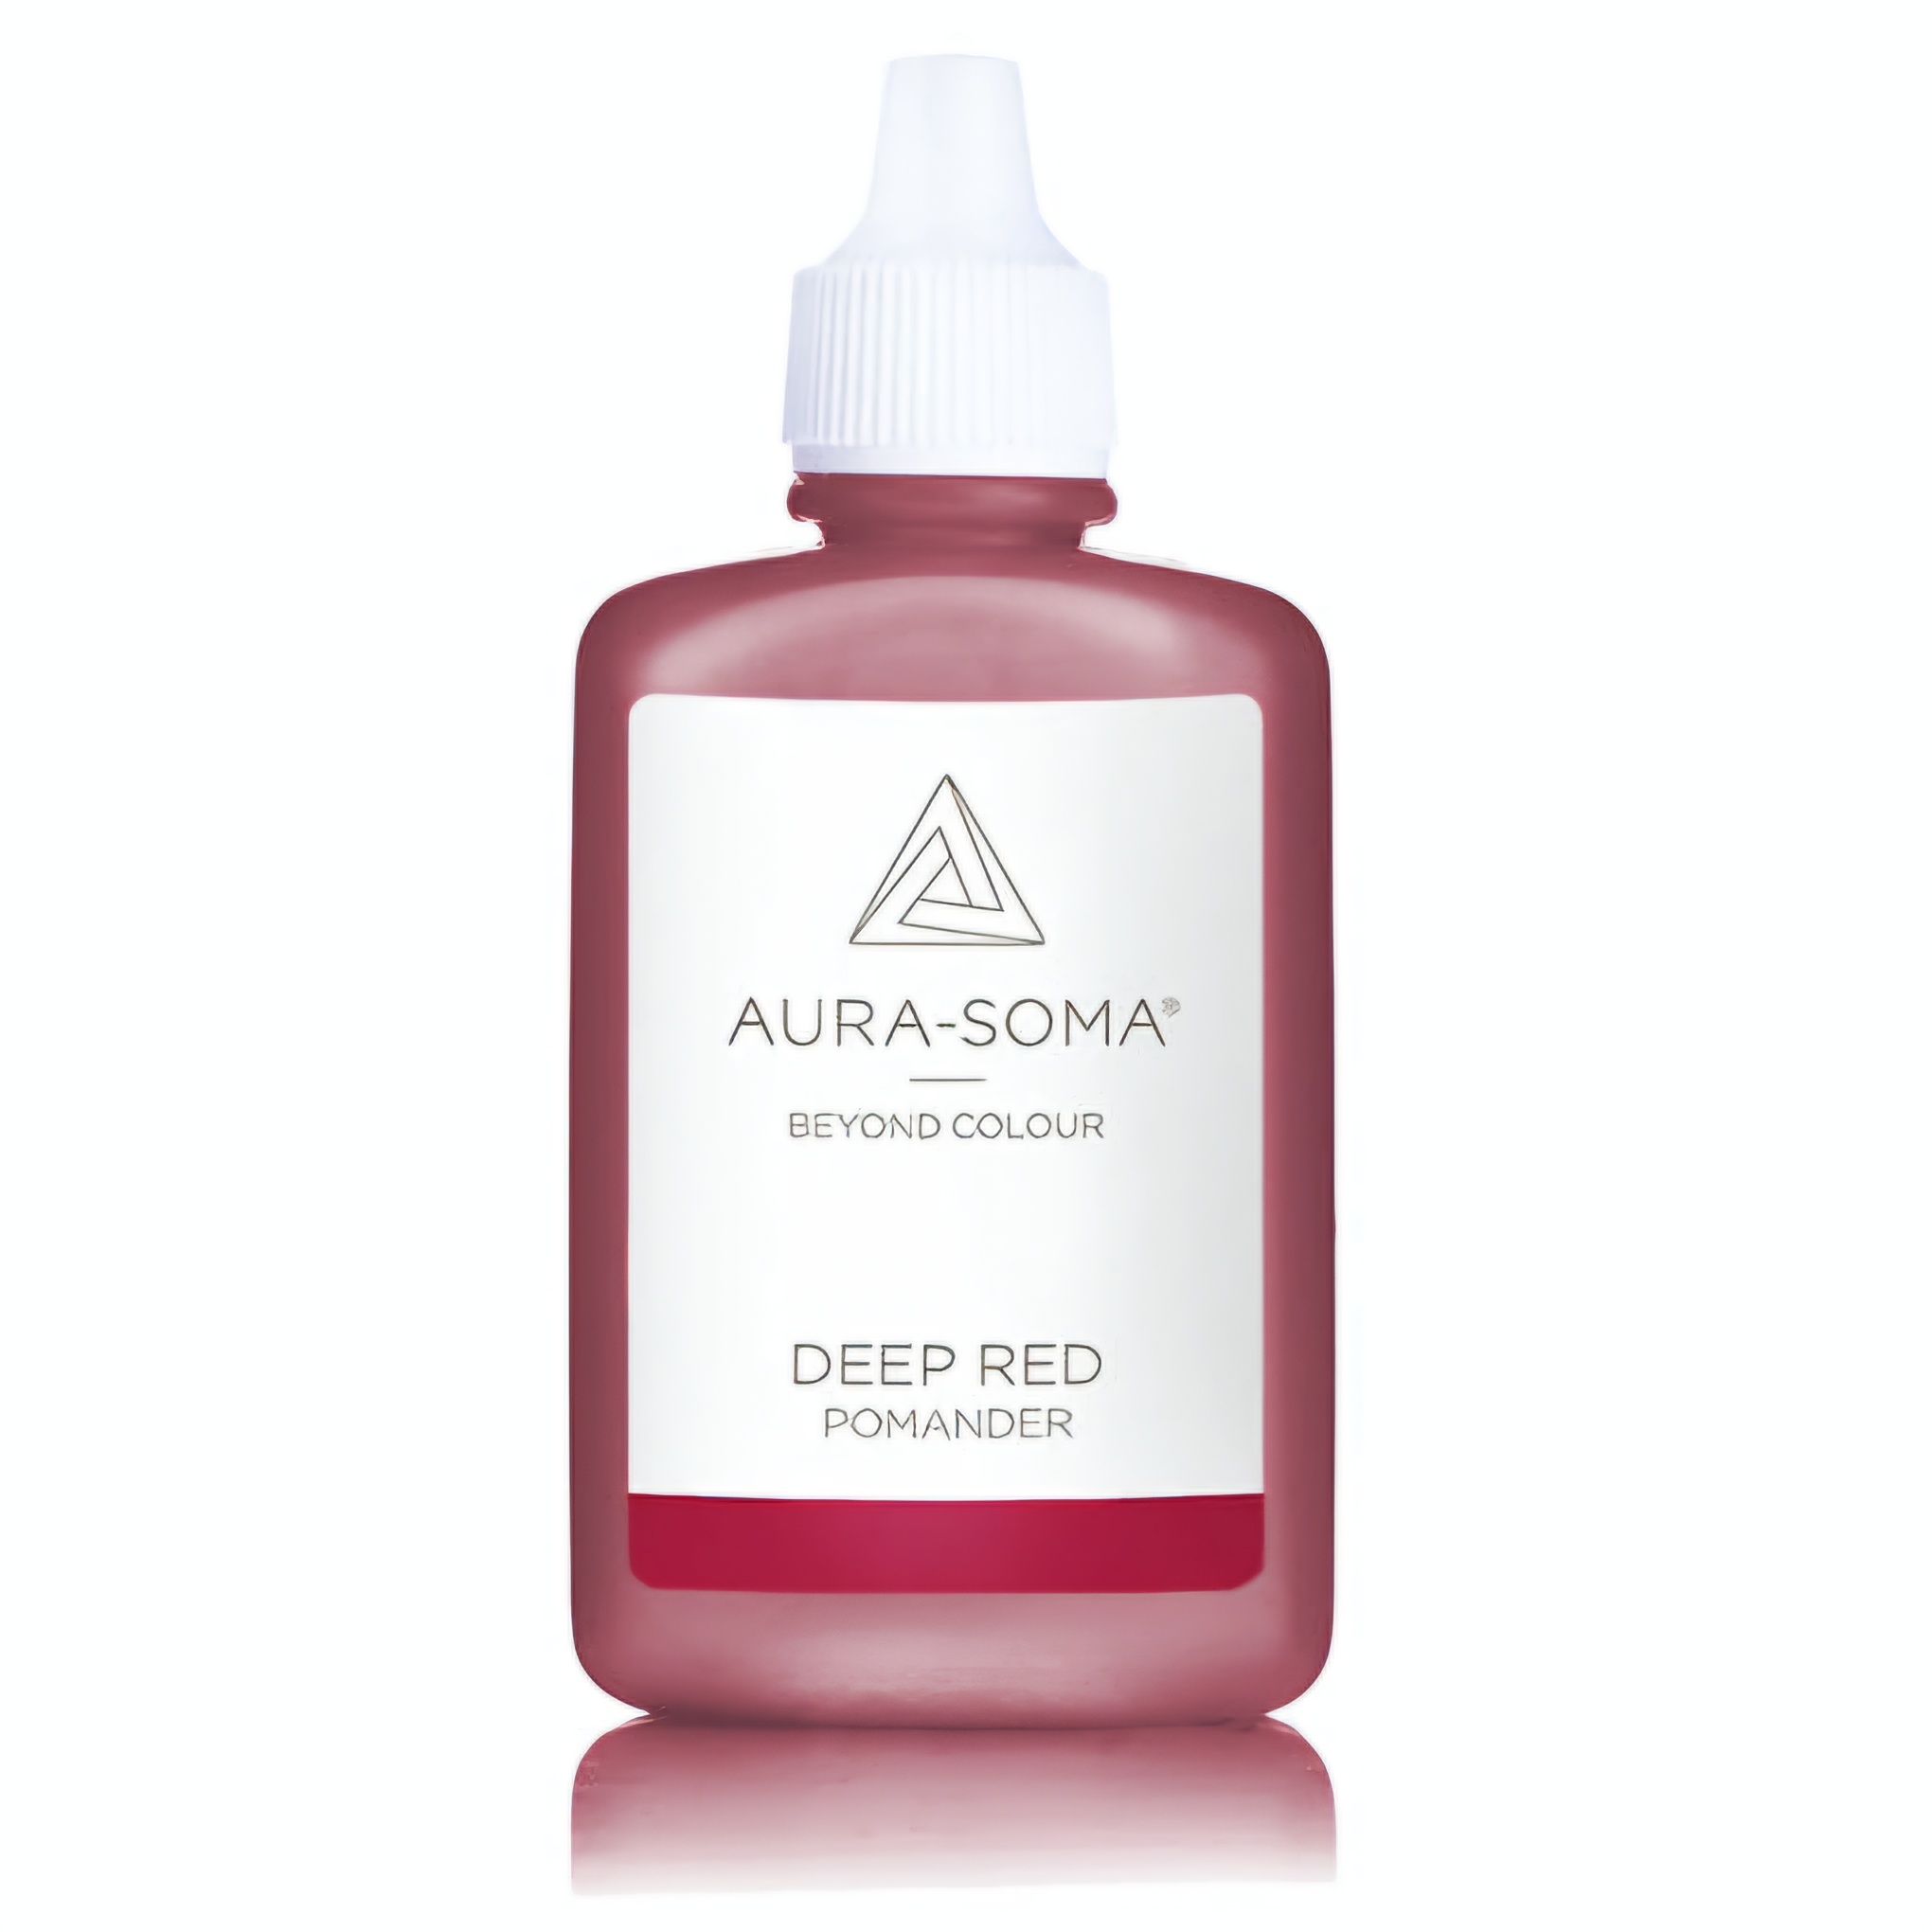 Aura-Soma pomander p04 tmavě červený je v plastové lahvičce ve verzi 25ml. Na obalu je etiketa se značkou Aura-Soma a nápisem 